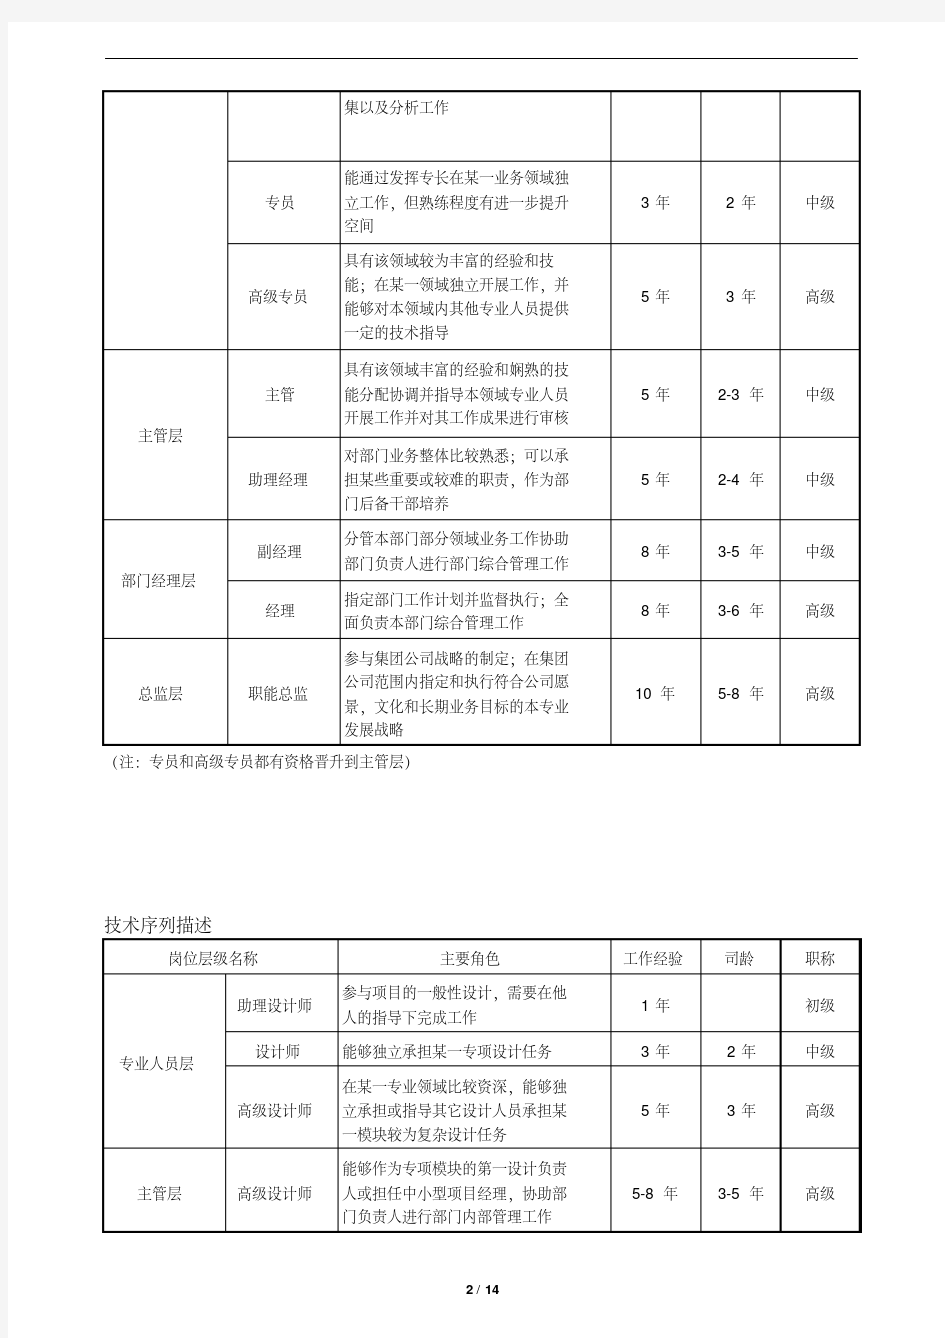 最新员工职业晋升通道管理办法(试).pdf